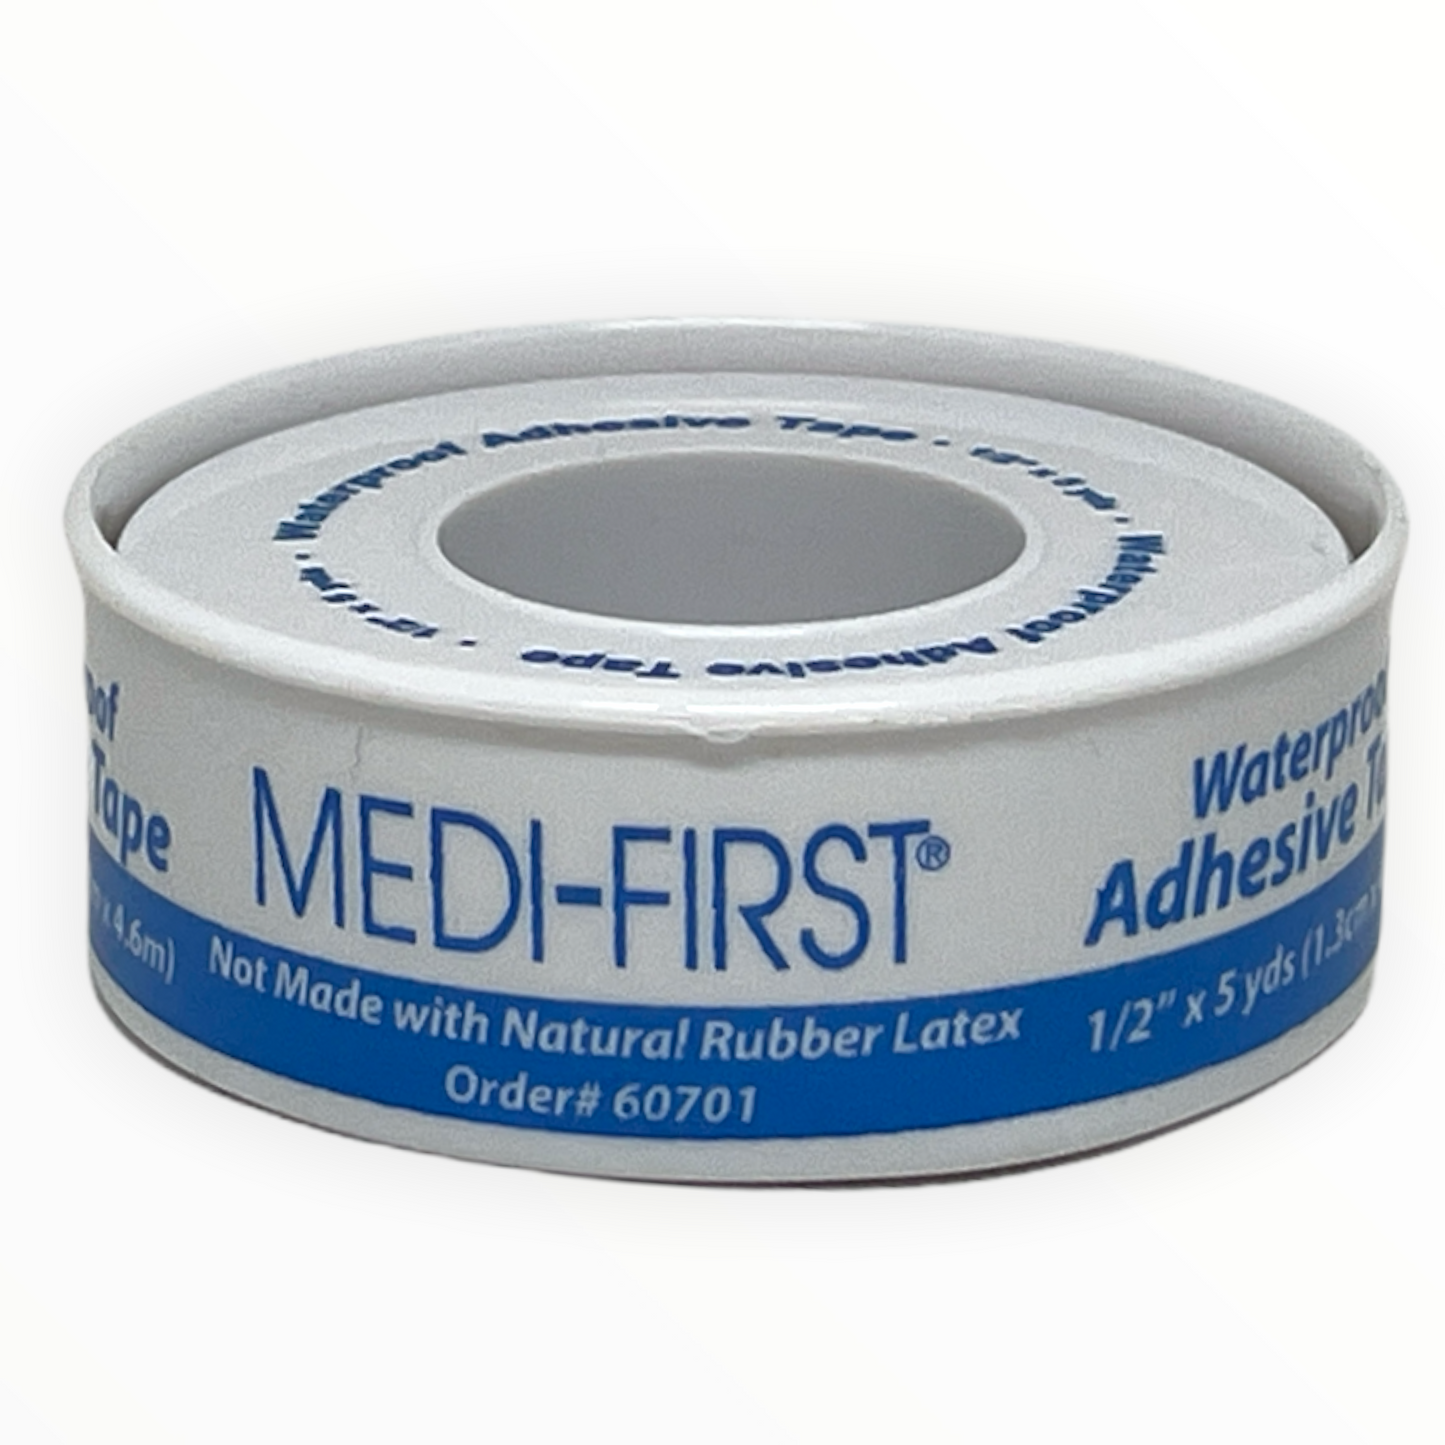 Medique | Adhesive Tape Waterproof 1/2" x 5 yds